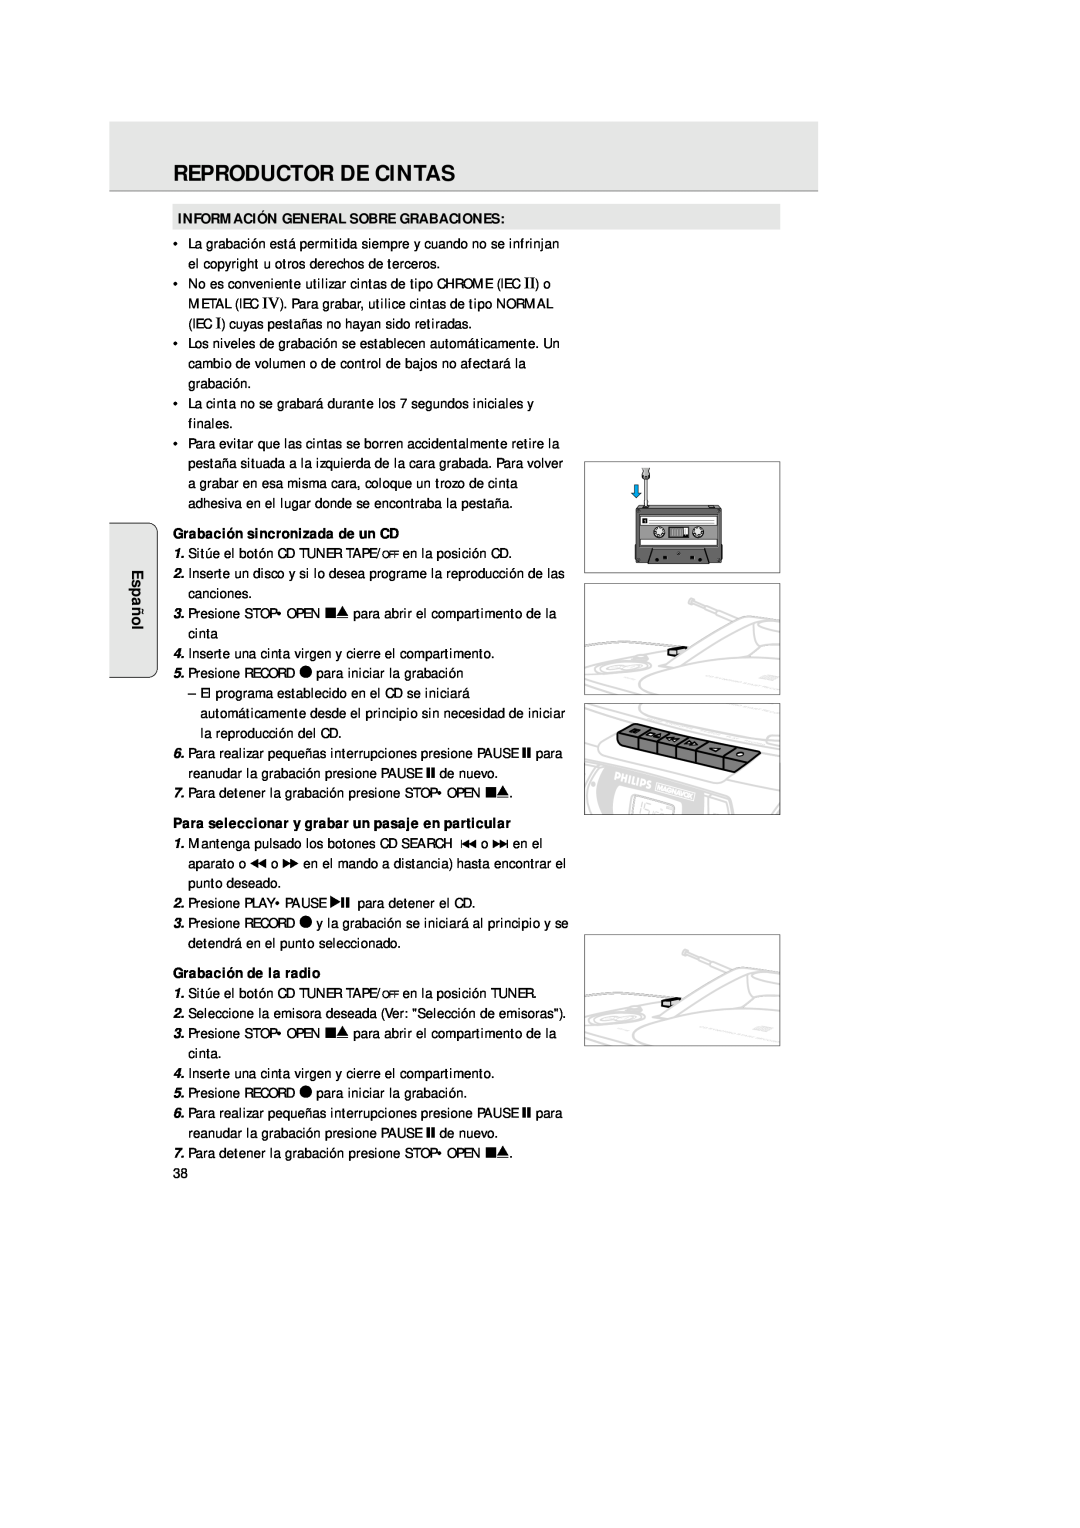 Philips AZ 1025 Reproductor De Cintas, Español, Información General Sobre Grabaciones, Grabación sincronizada de un CD 